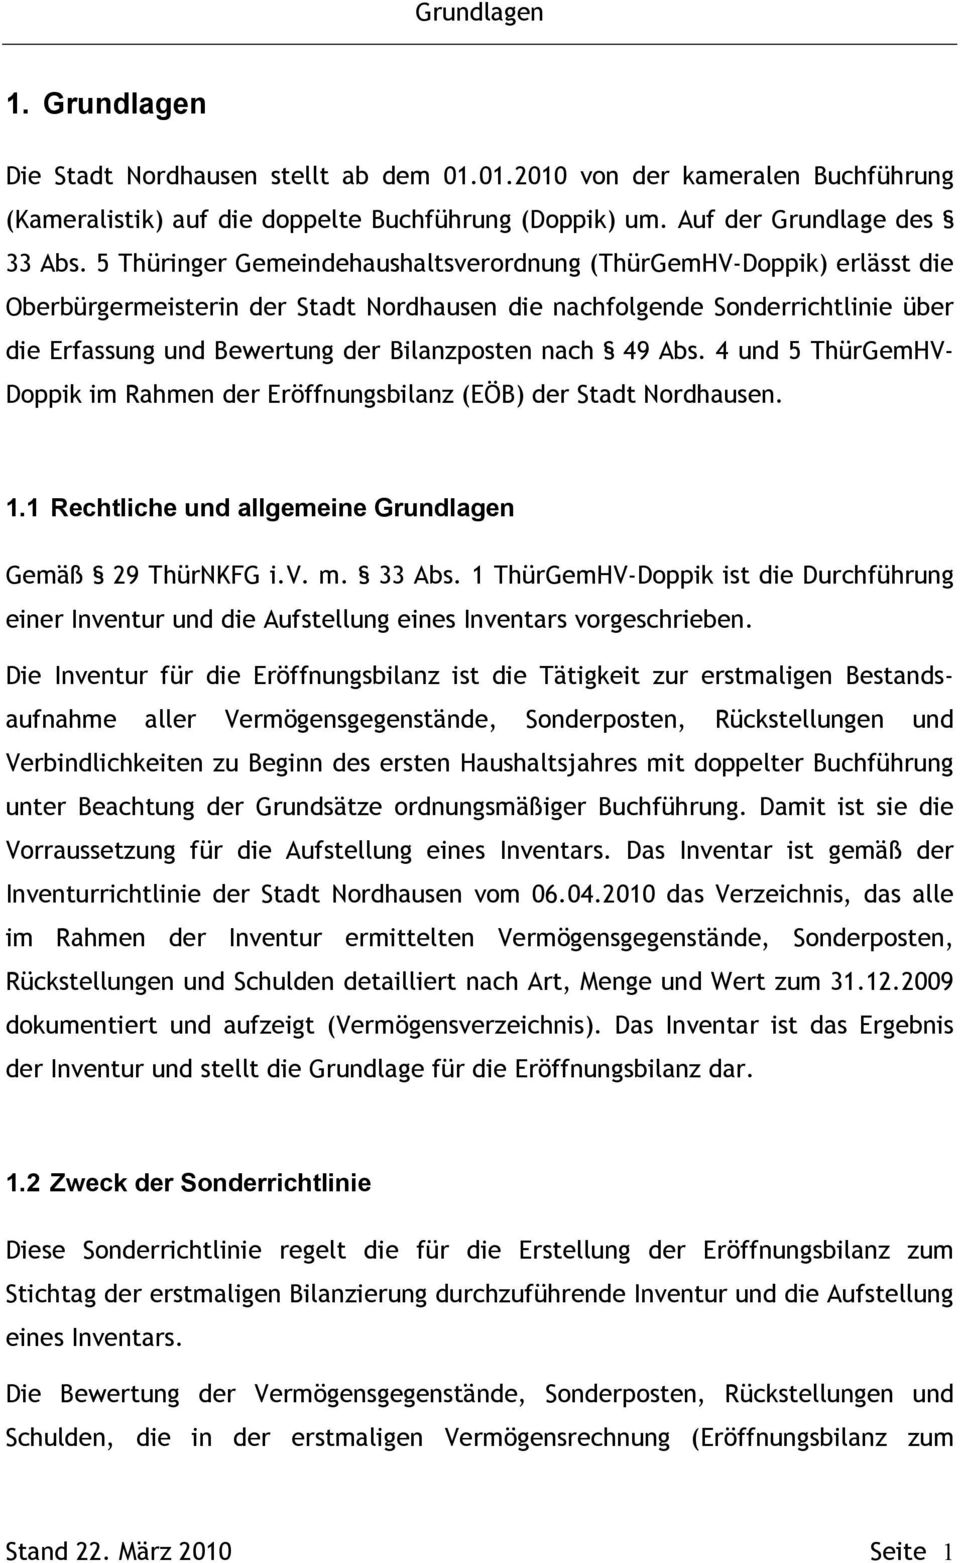 nach 49 Abs. 4 und 5 ThürGemHV- Doppik im Rahmen der Eröffnungsbilanz (EÖB) der Stadt Nordhausen. 1.1 Rechtliche und allgemeine Grundlagen Gemäß 29 ThürNKFG i.v. m. 33 Abs.